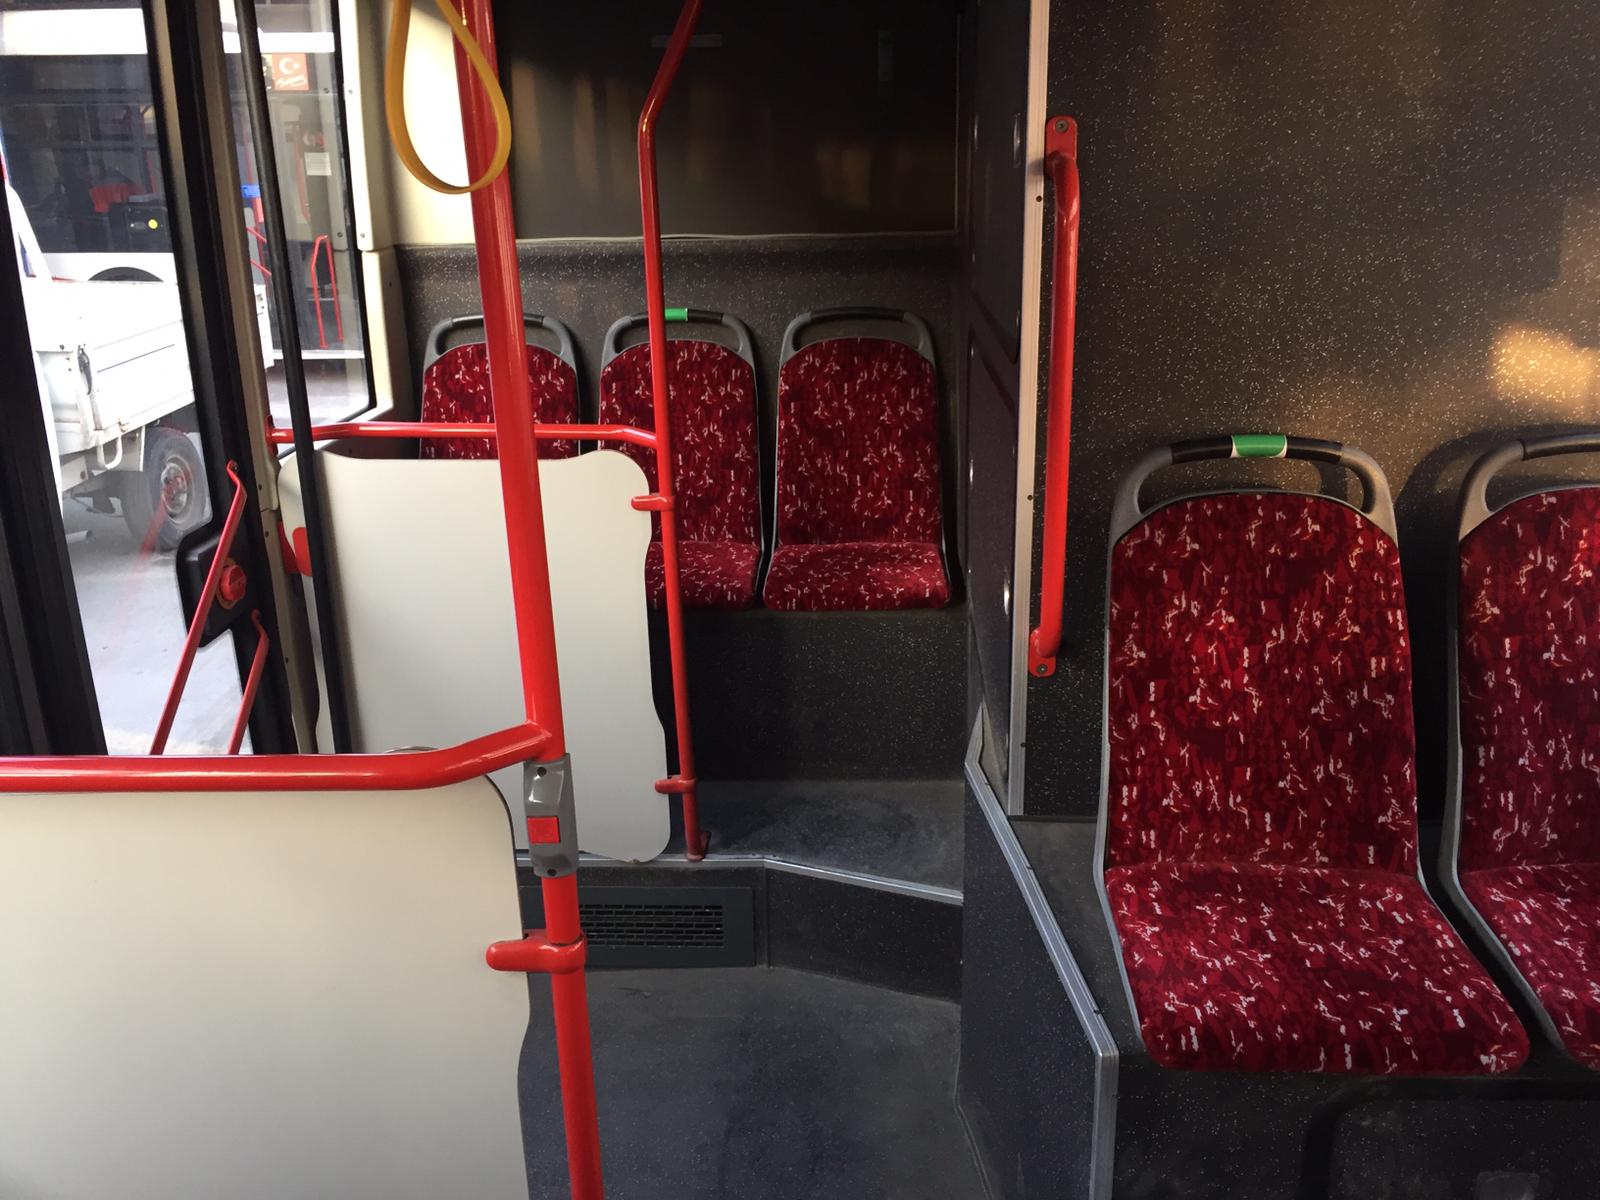 Toplu ulaşımda “yeşil koltuk” uygulaması